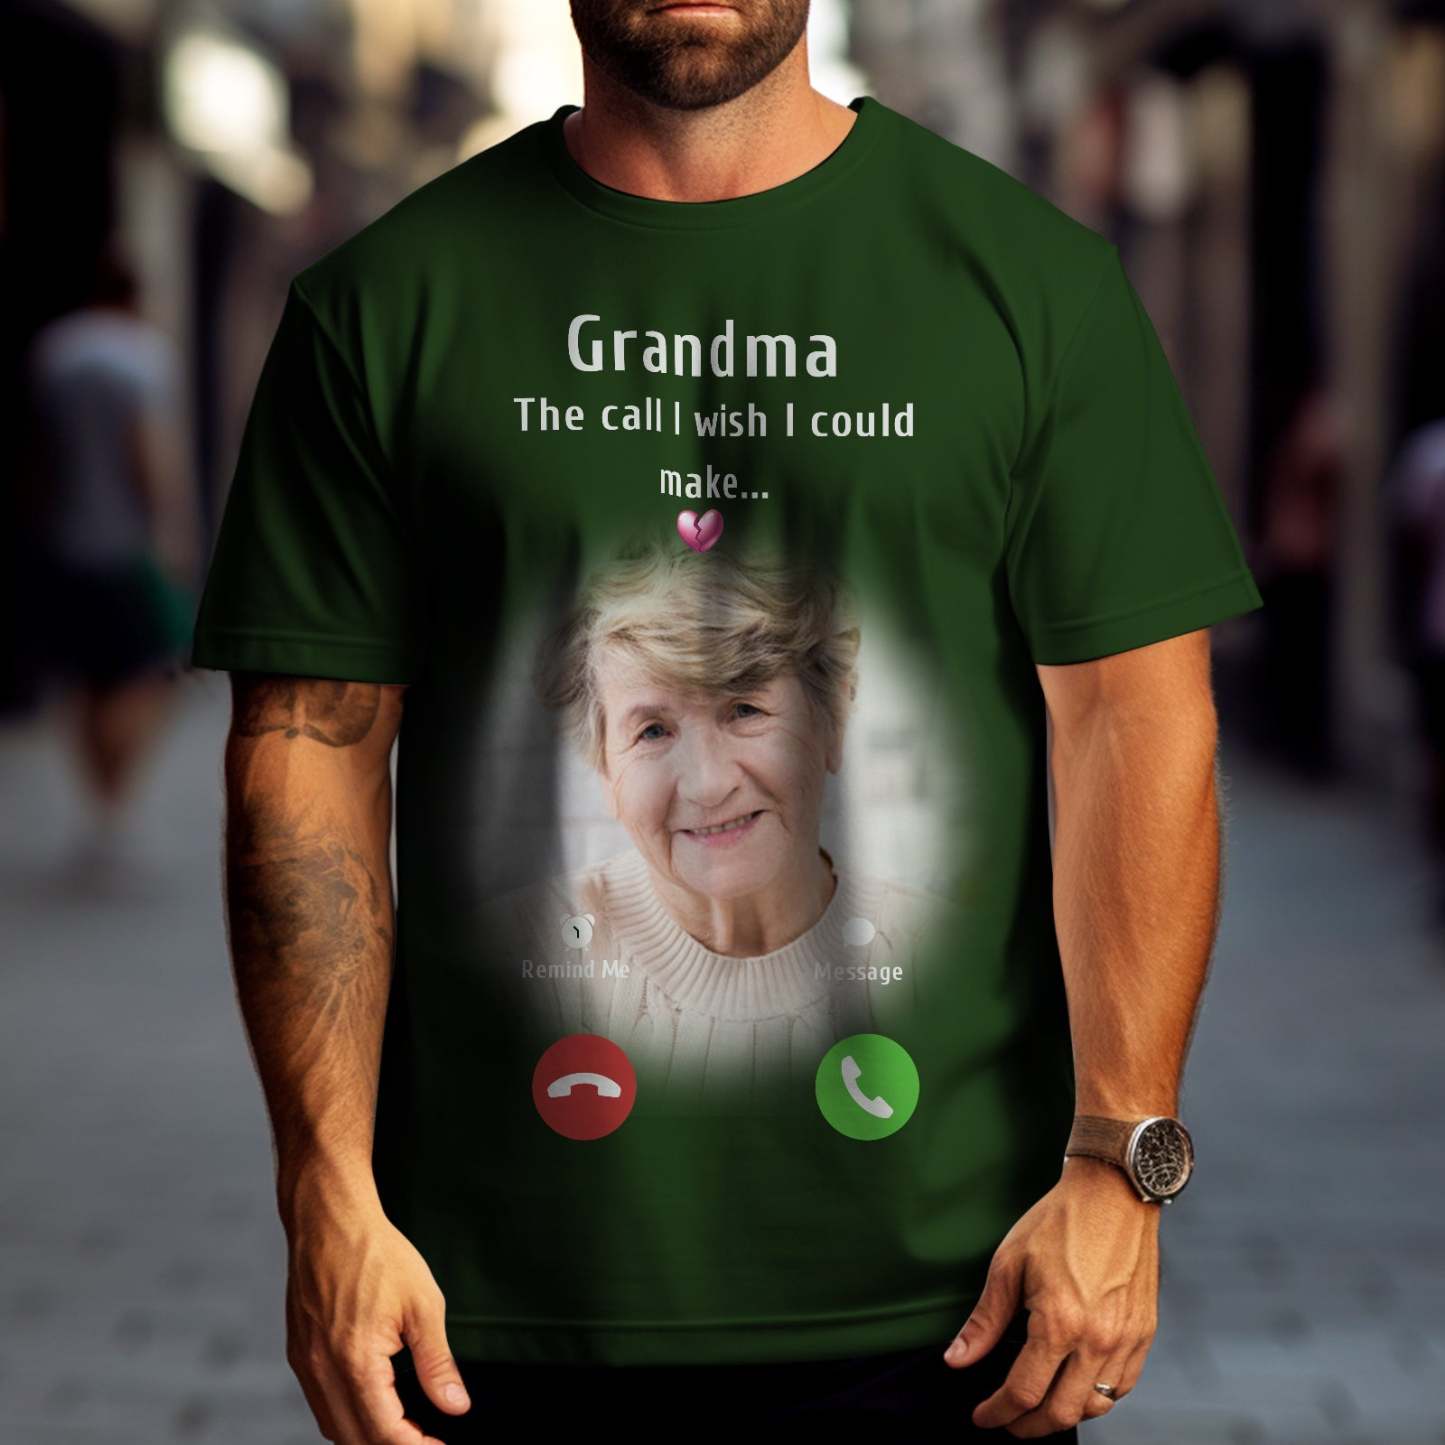 Camiseta Personalizada Con Foto Conmemorativa Para Mamá, Idea De Regalo Conmemorativo, Camisa Personalizada, La Llamada Que Desearía Poder Hacer - MyFaceSocksMX